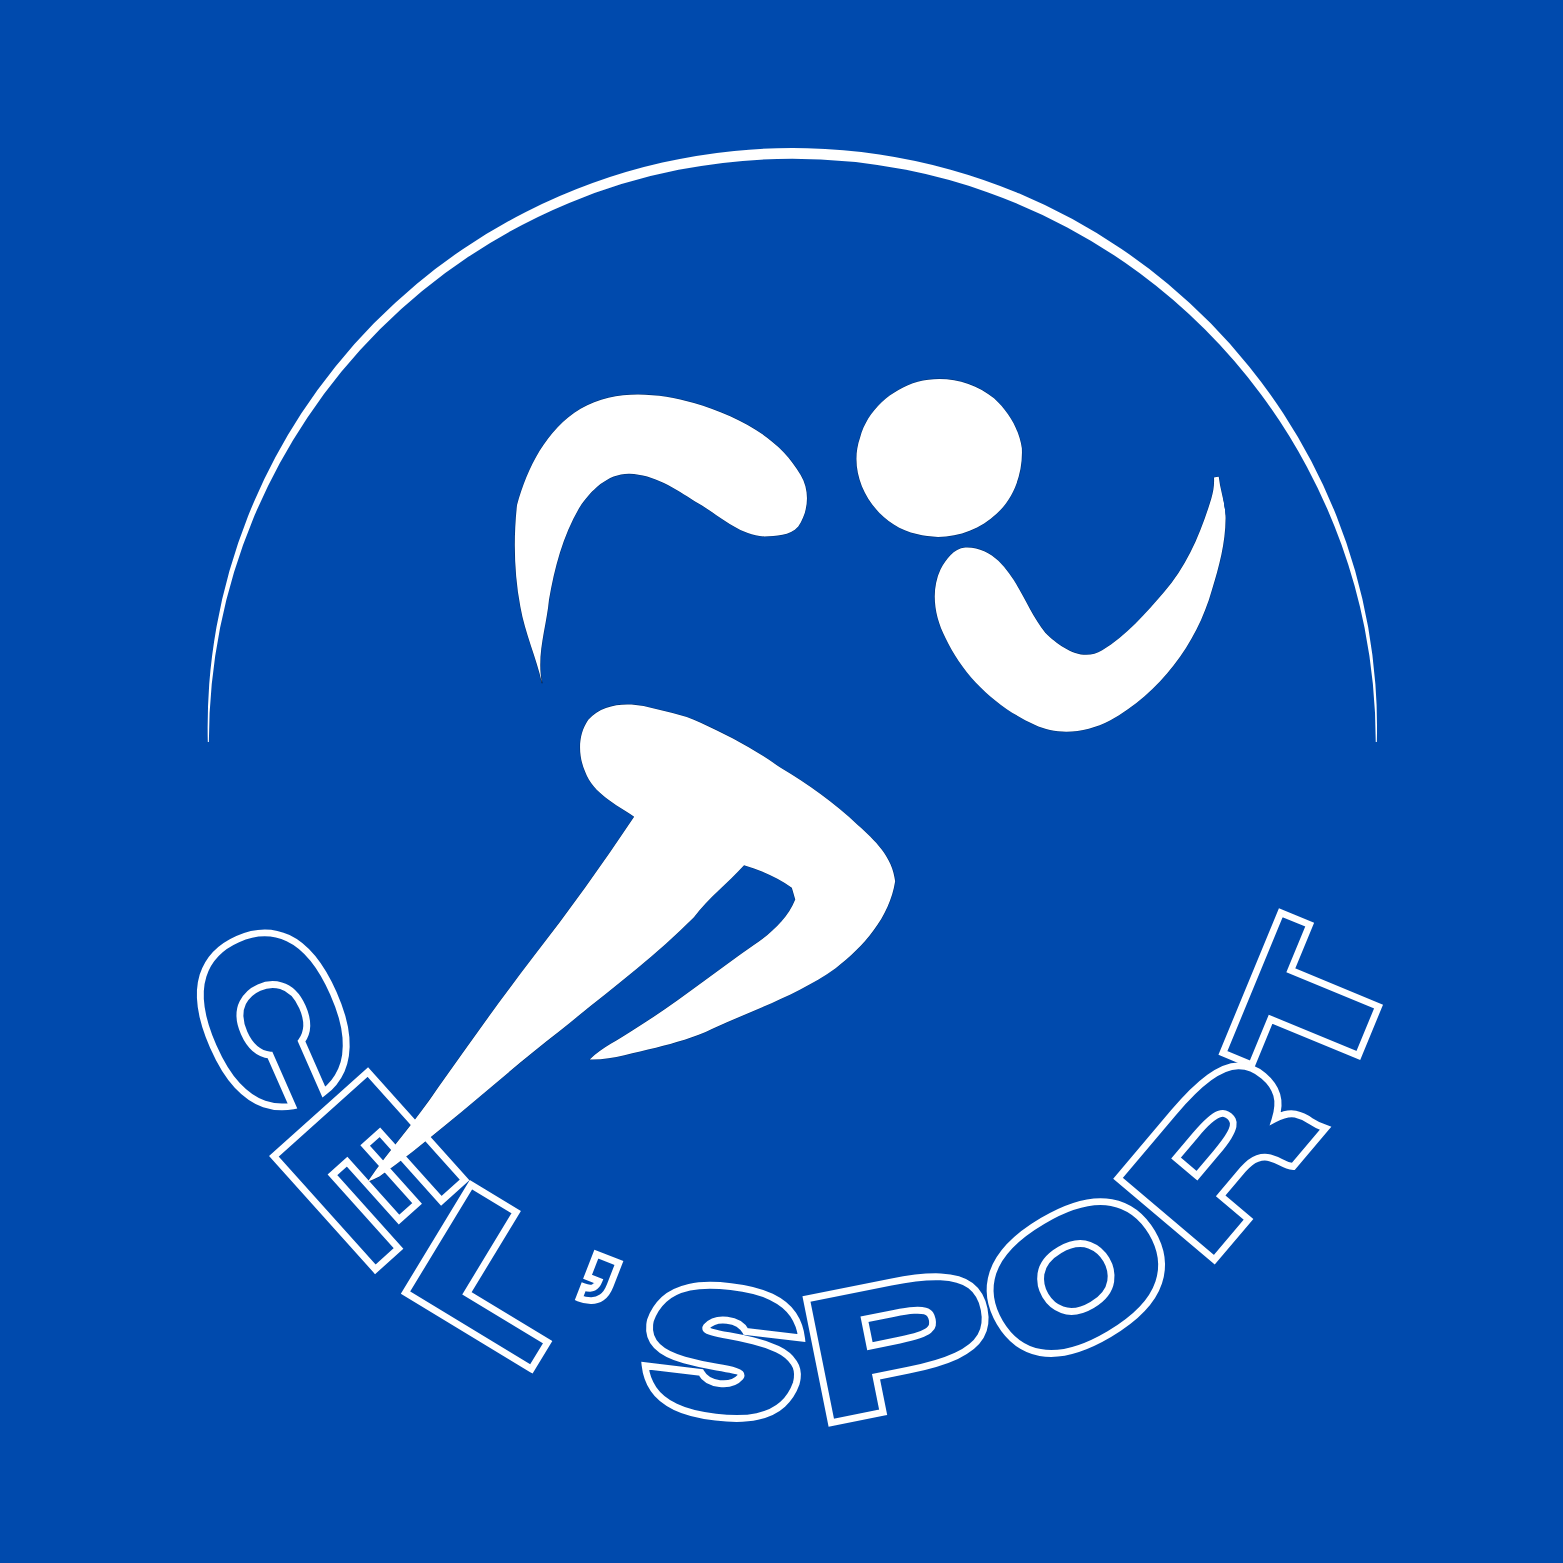 CEL’SPORT logo